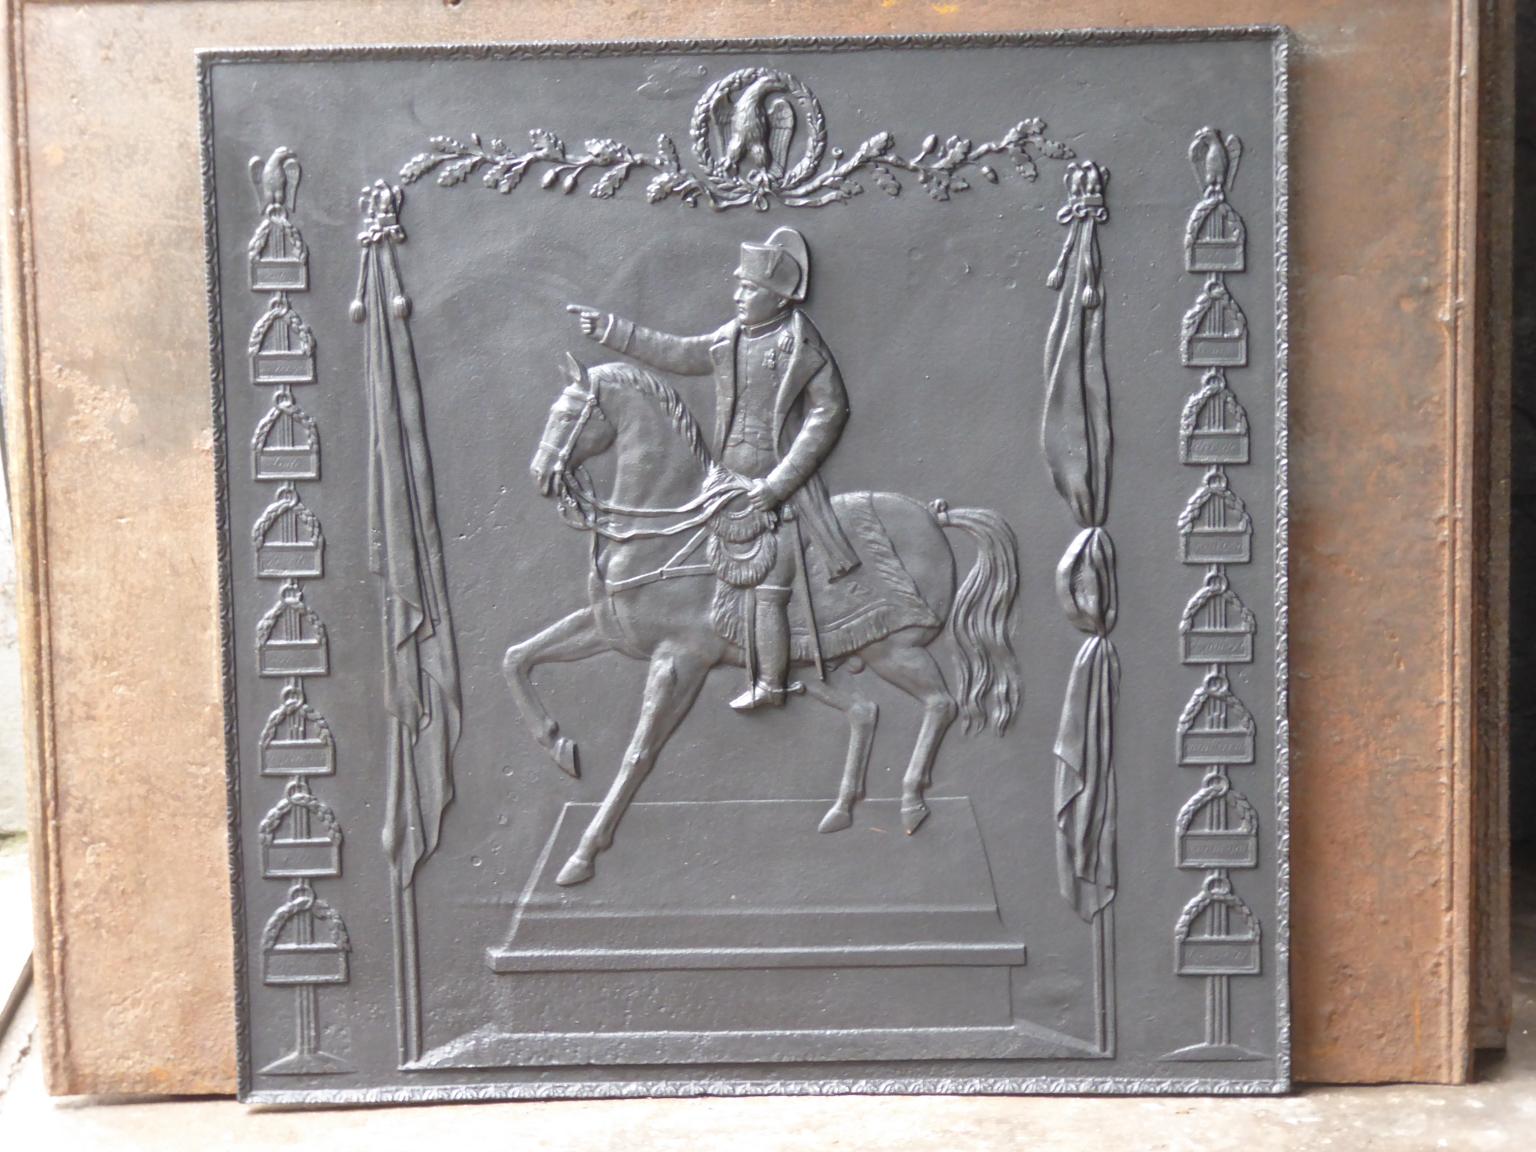 Plaque de cheminée française du 20e siècle de style Napoléon III représentant Napoléon sur son cheval.

La plaque de cheminée est en fonte et a une patine noire/étain. Il est en bon état et ne présente pas de fissures.